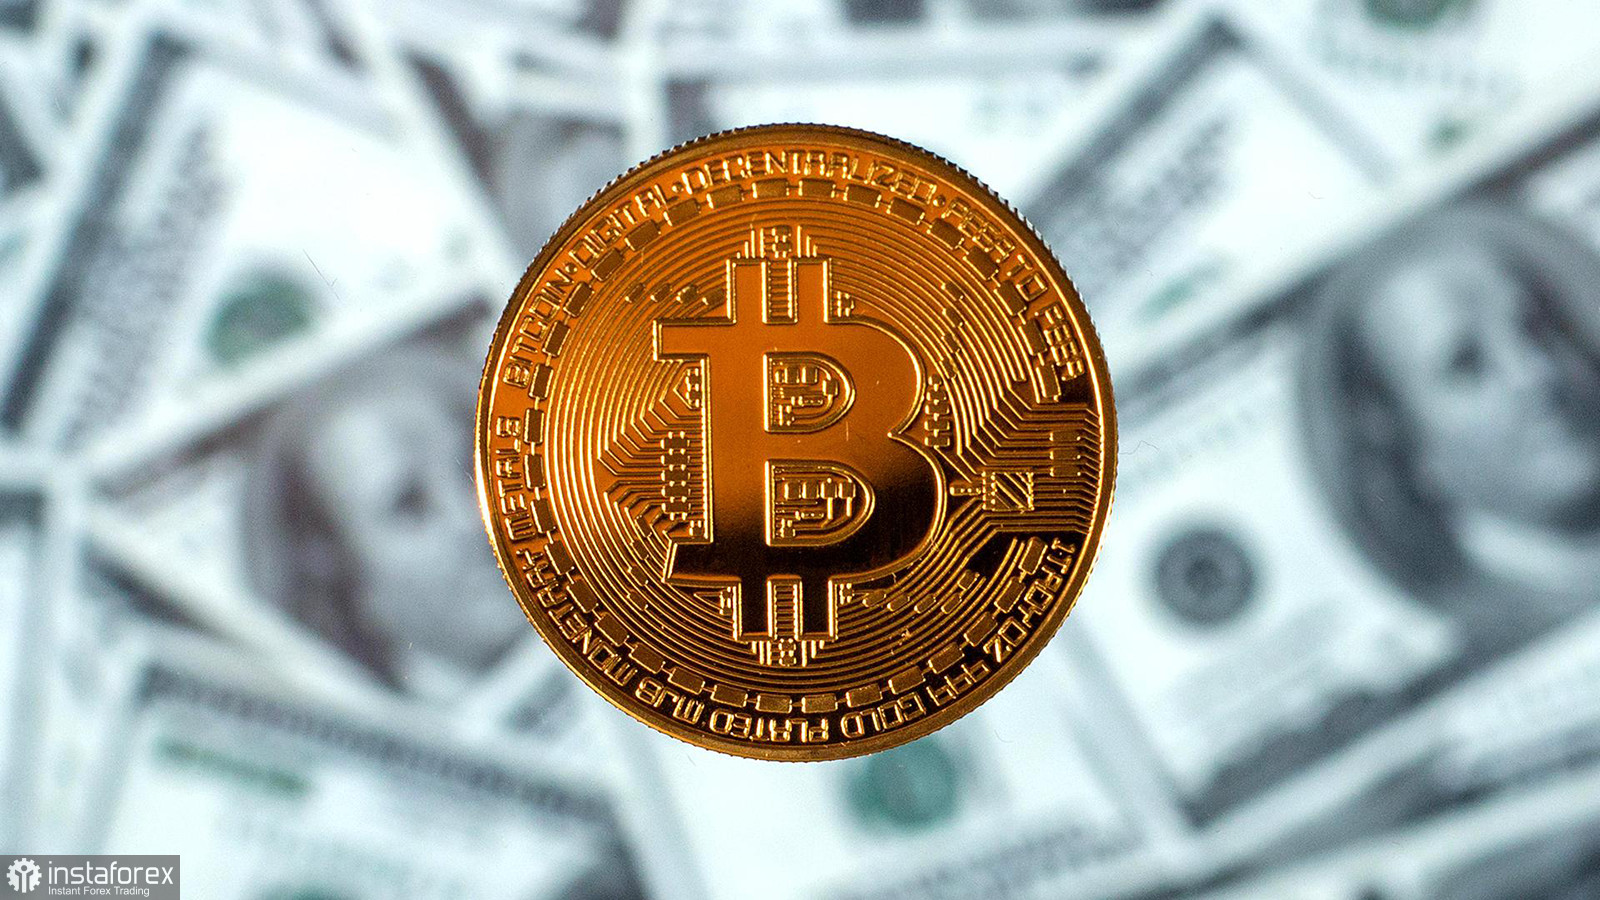  Los expertos esperan una nueva ronda de corrección, Kevin O'Leary sigue comprando bitcoin.